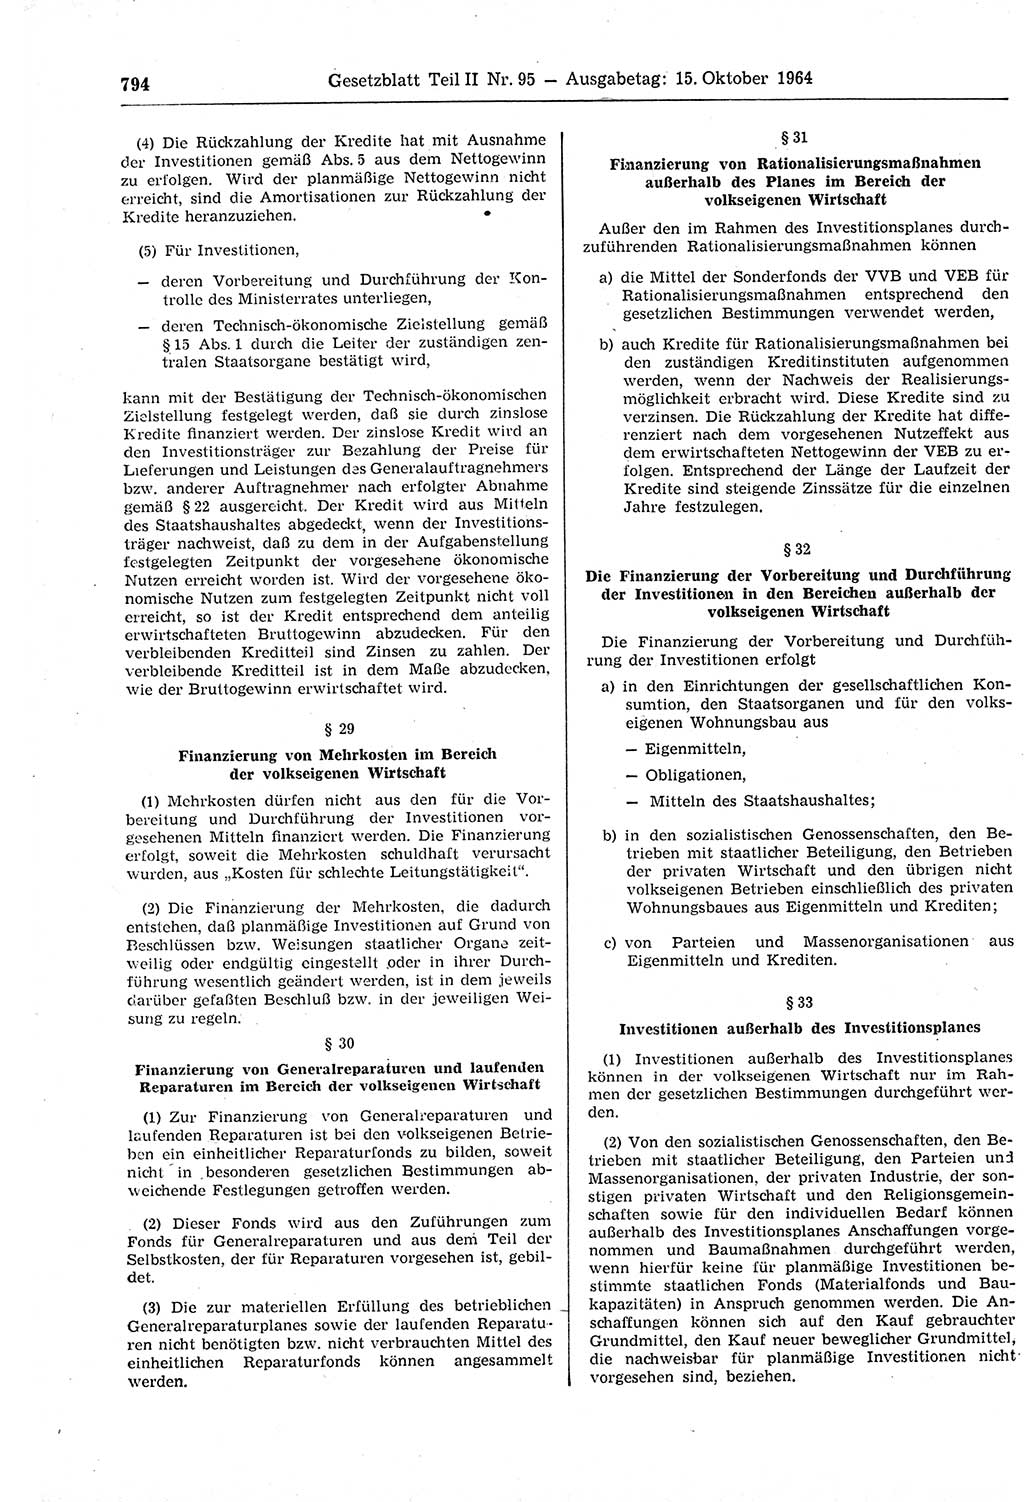 Gesetzblatt (GBl.) der Deutschen Demokratischen Republik (DDR) Teil ⅠⅠ 1964, Seite 794 (GBl. DDR ⅠⅠ 1964, S. 794)